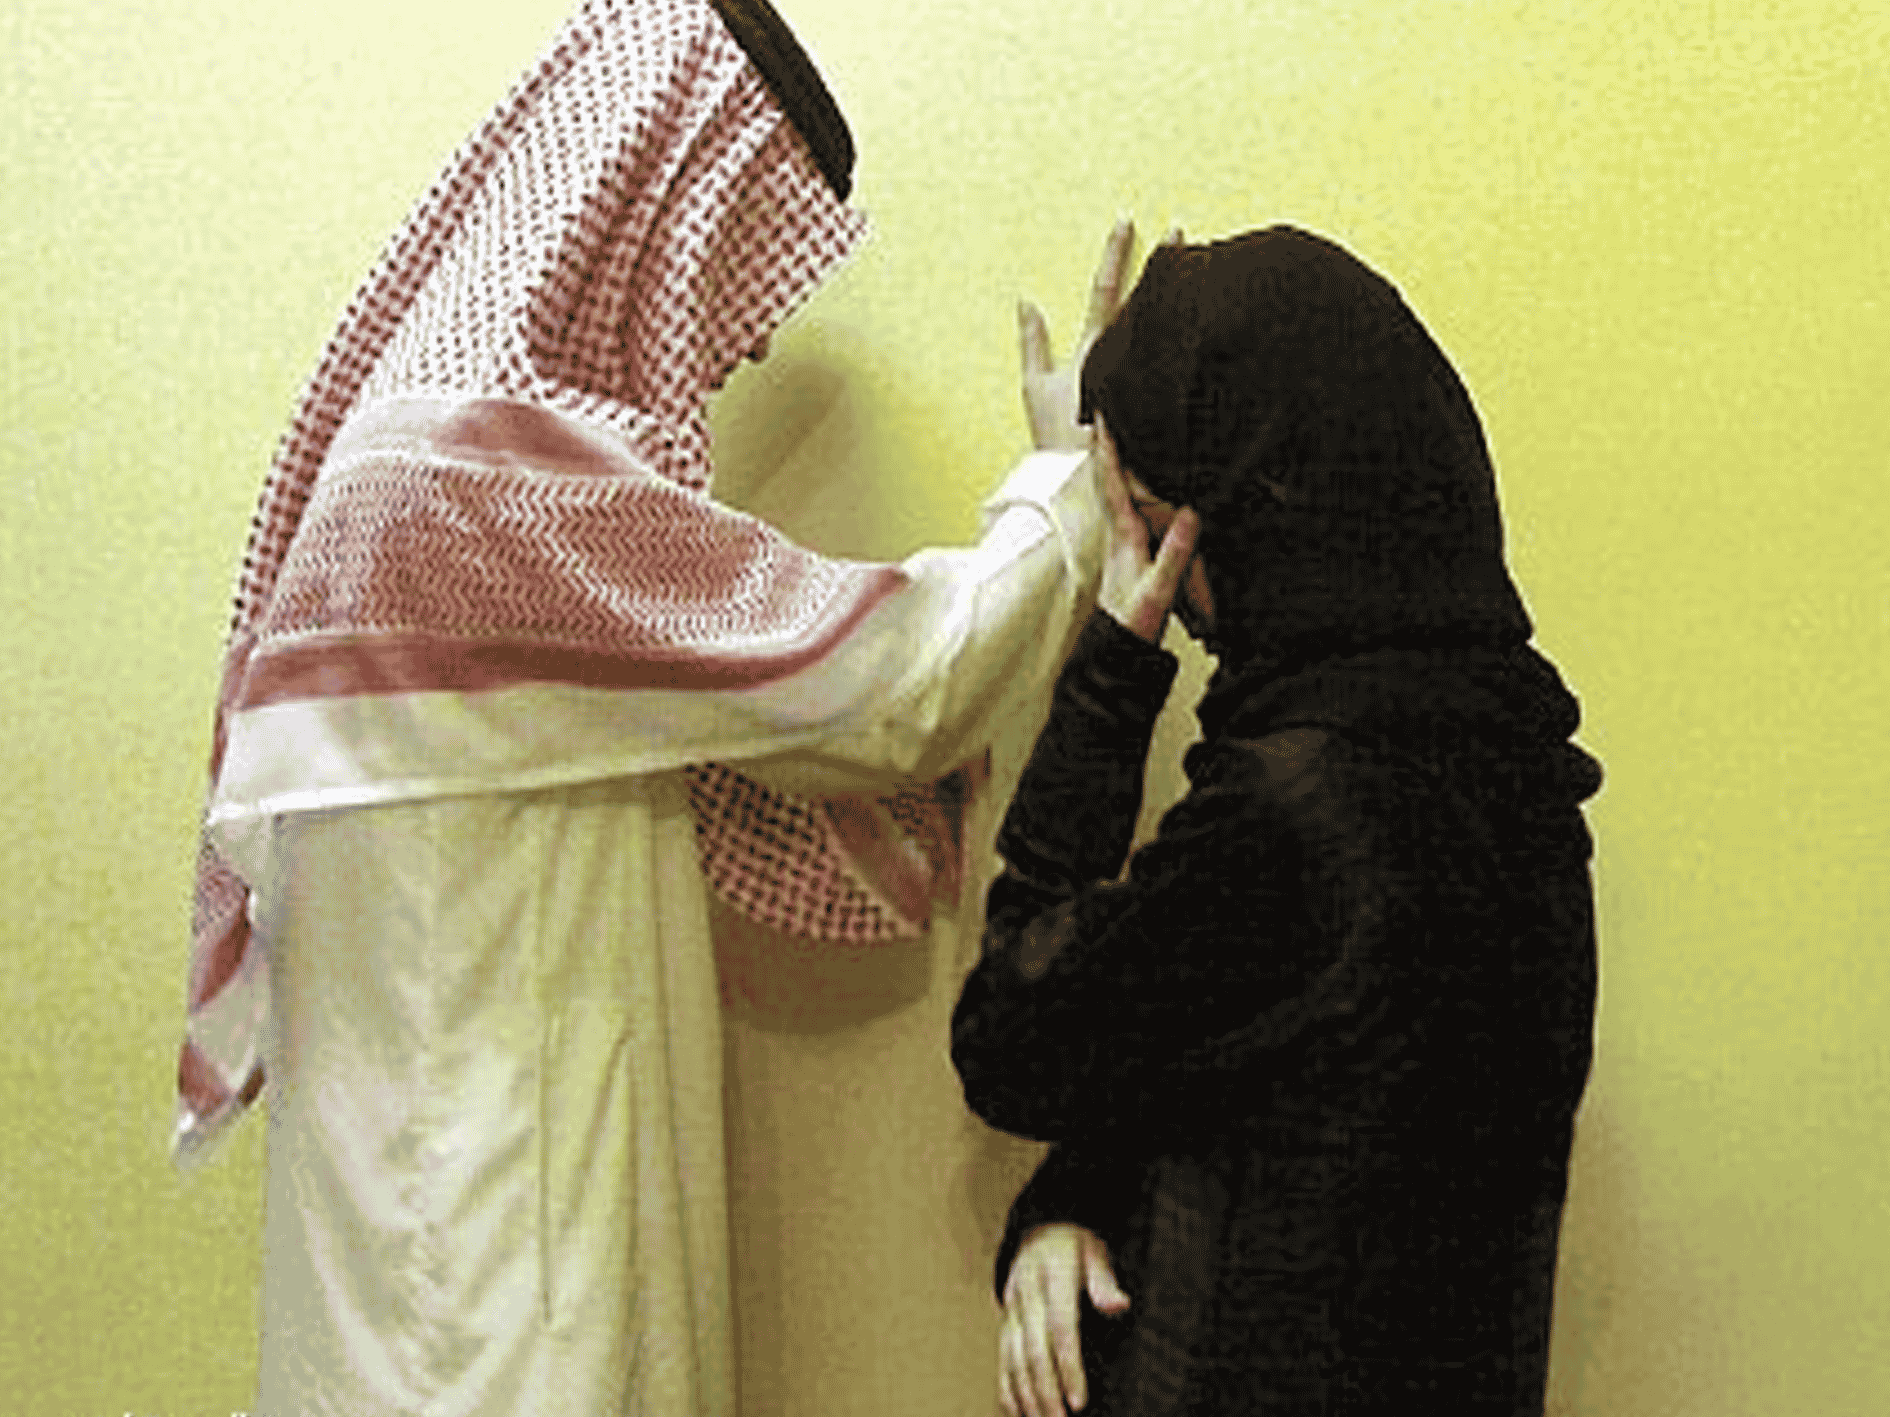 سعودية خطيبها مصاب بالإيدز watanserb.com